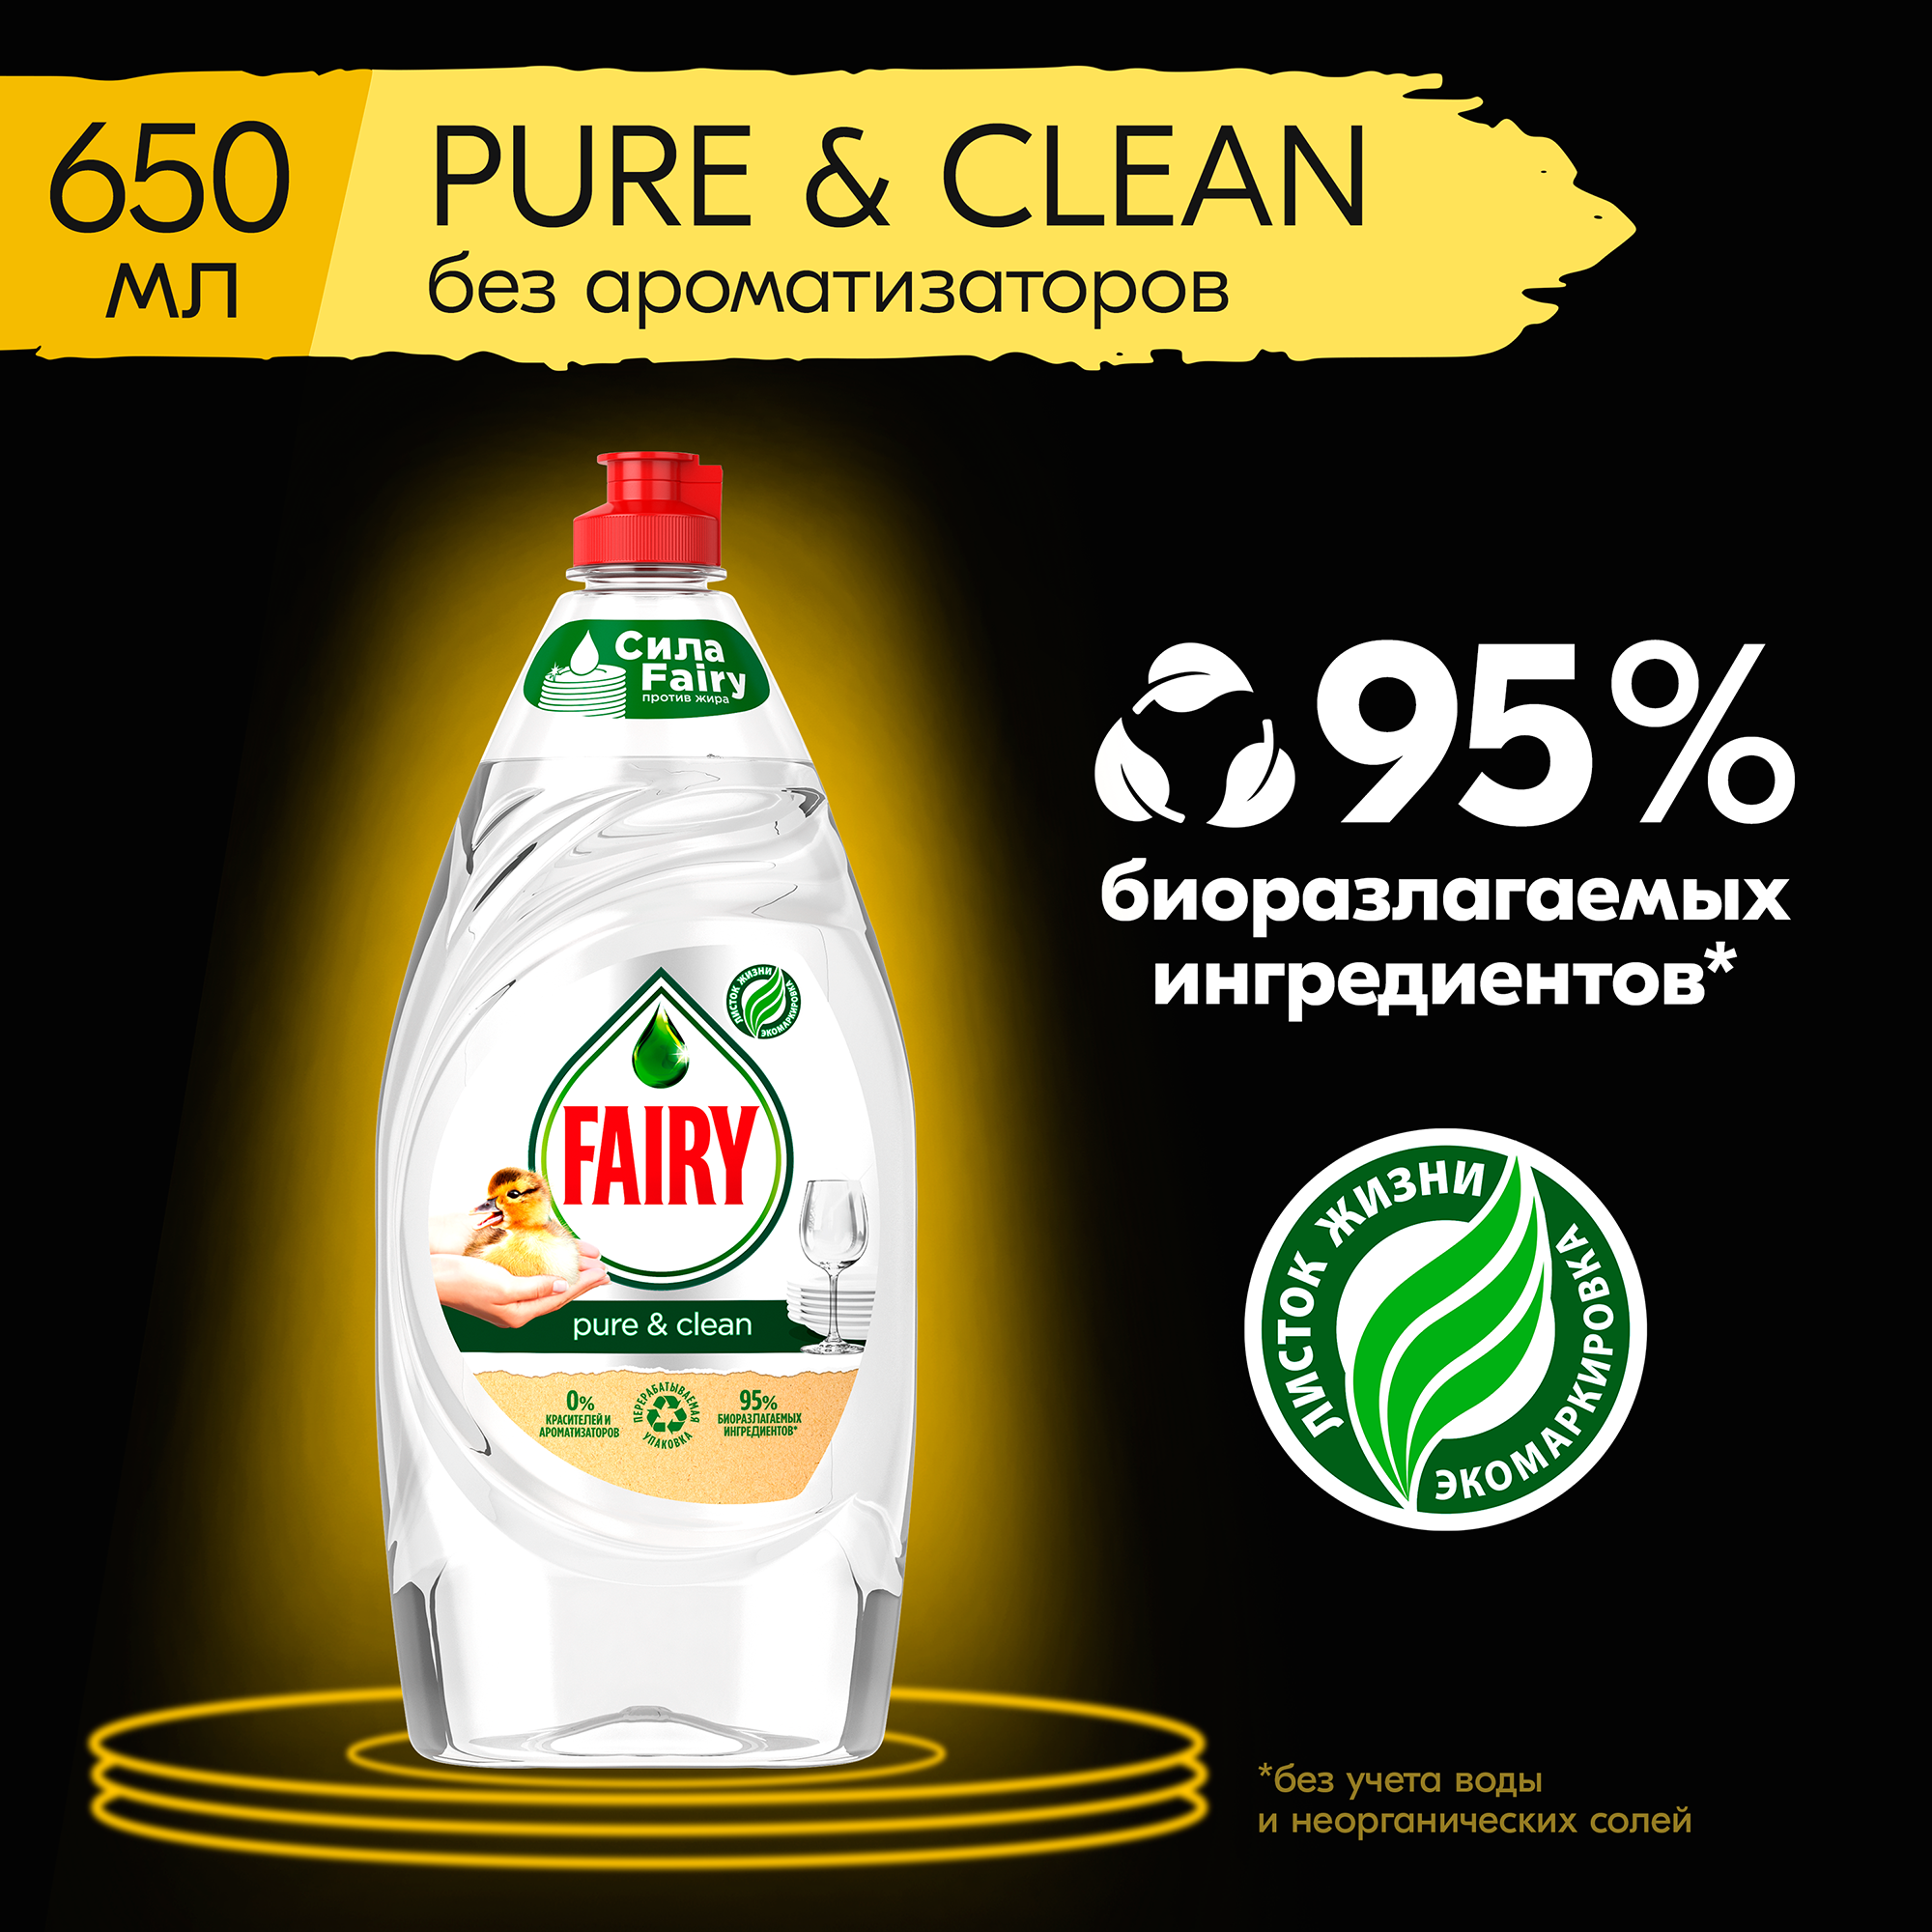     "Fairy Pure & Clean", 650 